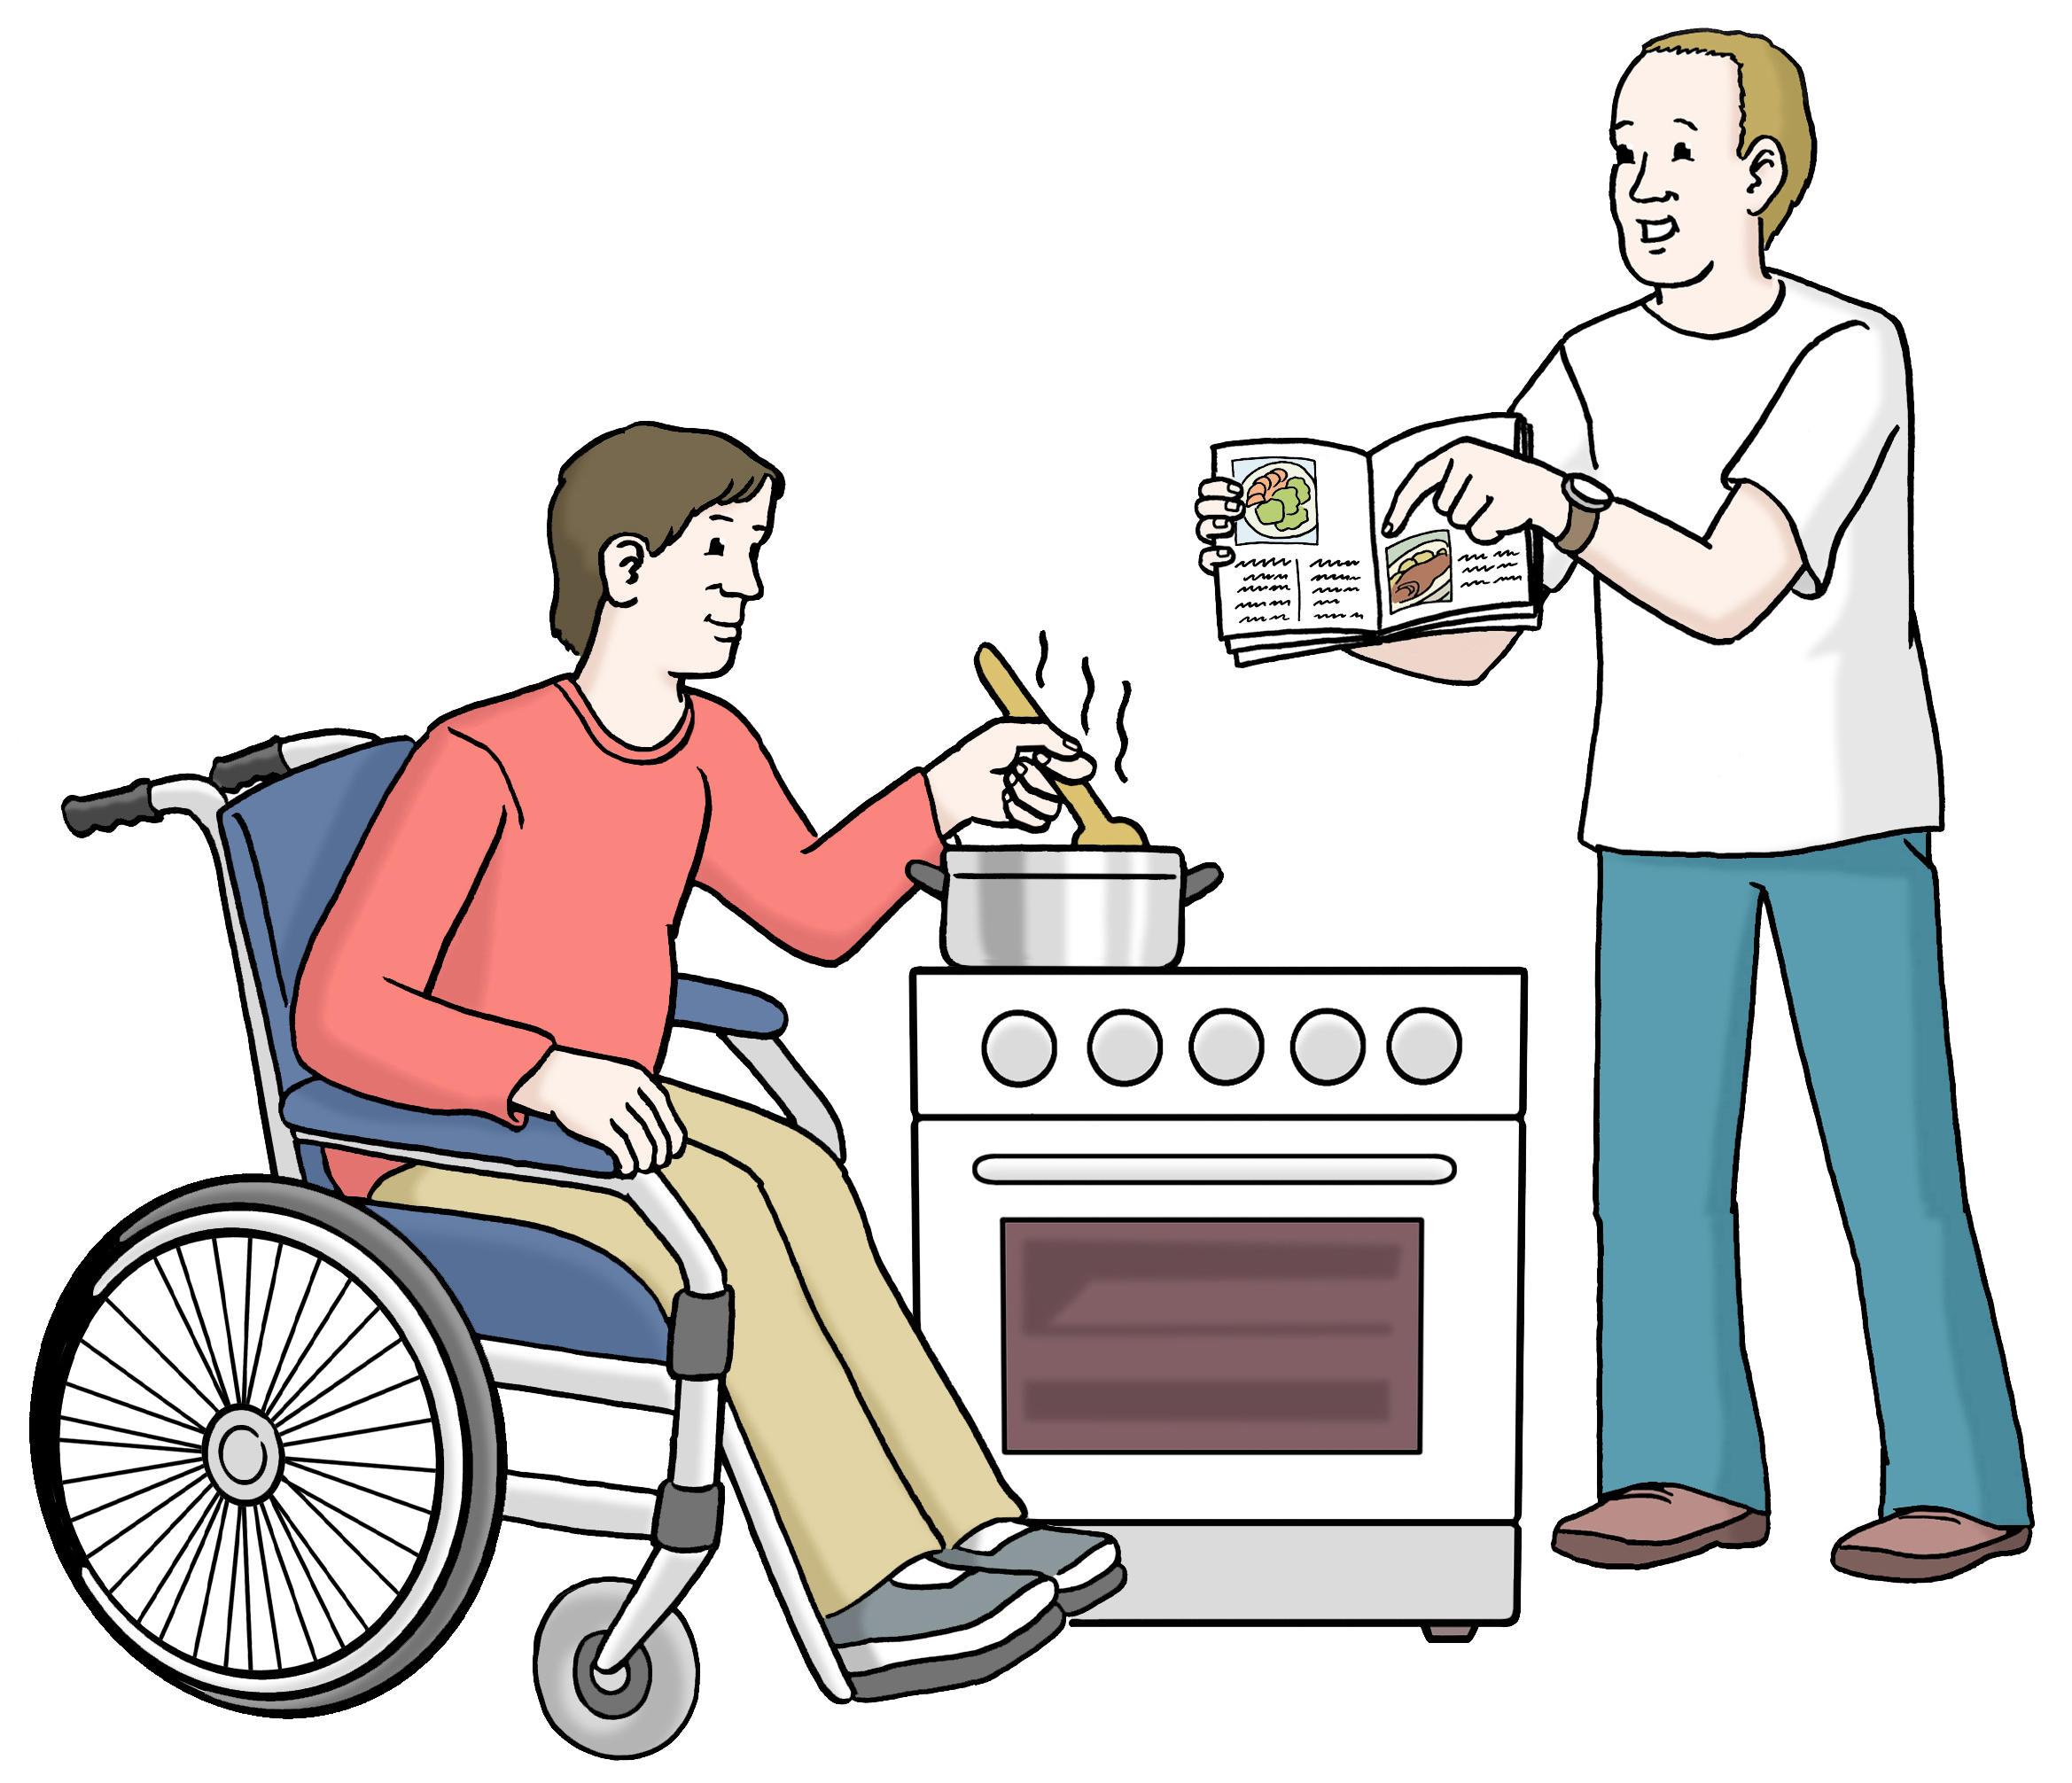 Leichte Sprache Bild: Zwei Menschen kochen zusammen, davon sitzt ein Mensch im Rollstuhl